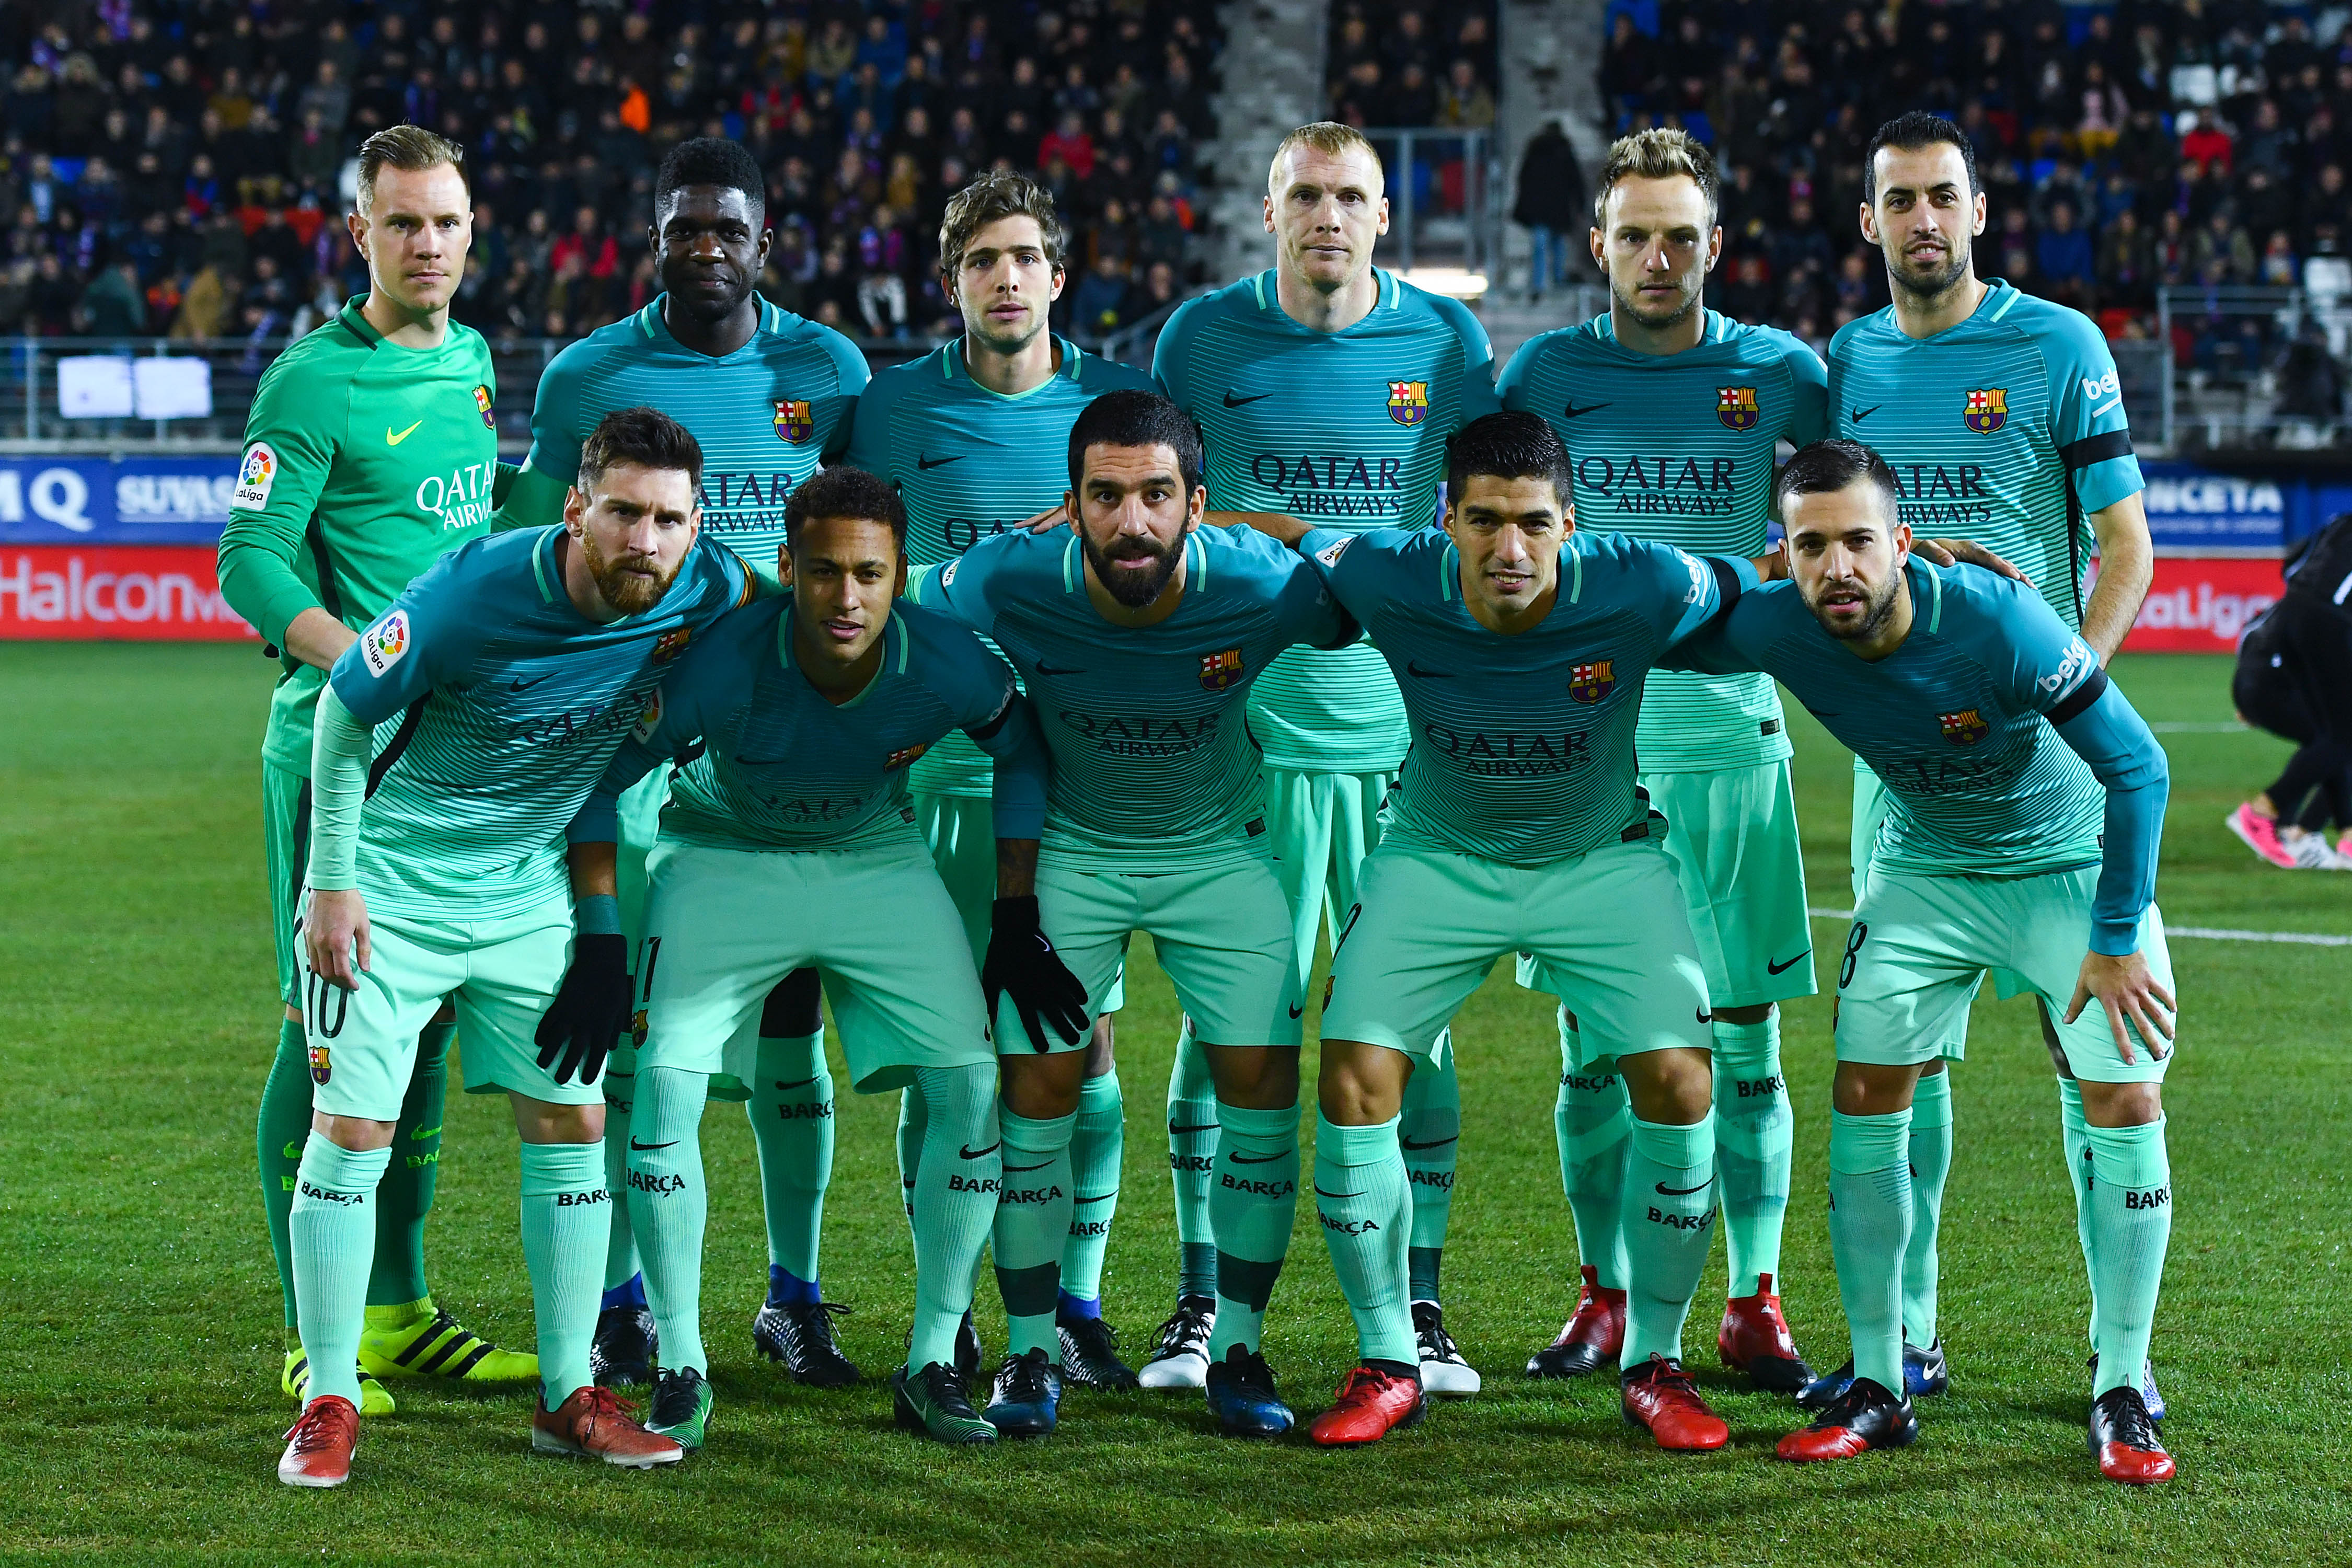 FC Barcelona host SD Eibar in La Liga Matchday 38